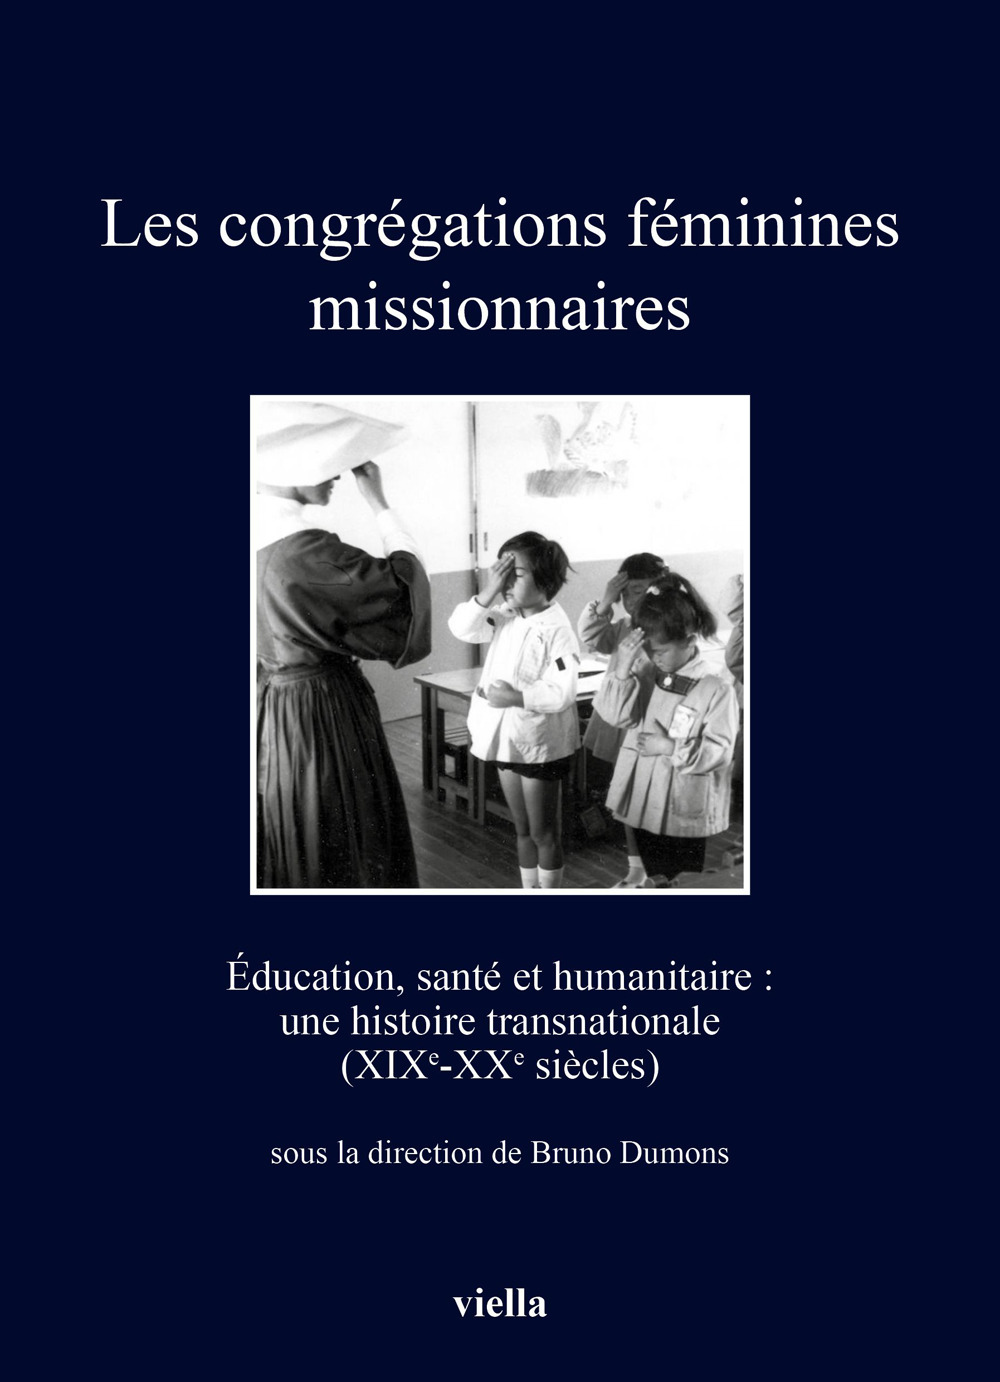 Les congrégations féminines missionnaires. Éducation, santé et humanitaire: une histoire transnationale (XIXe-XXe siècles)